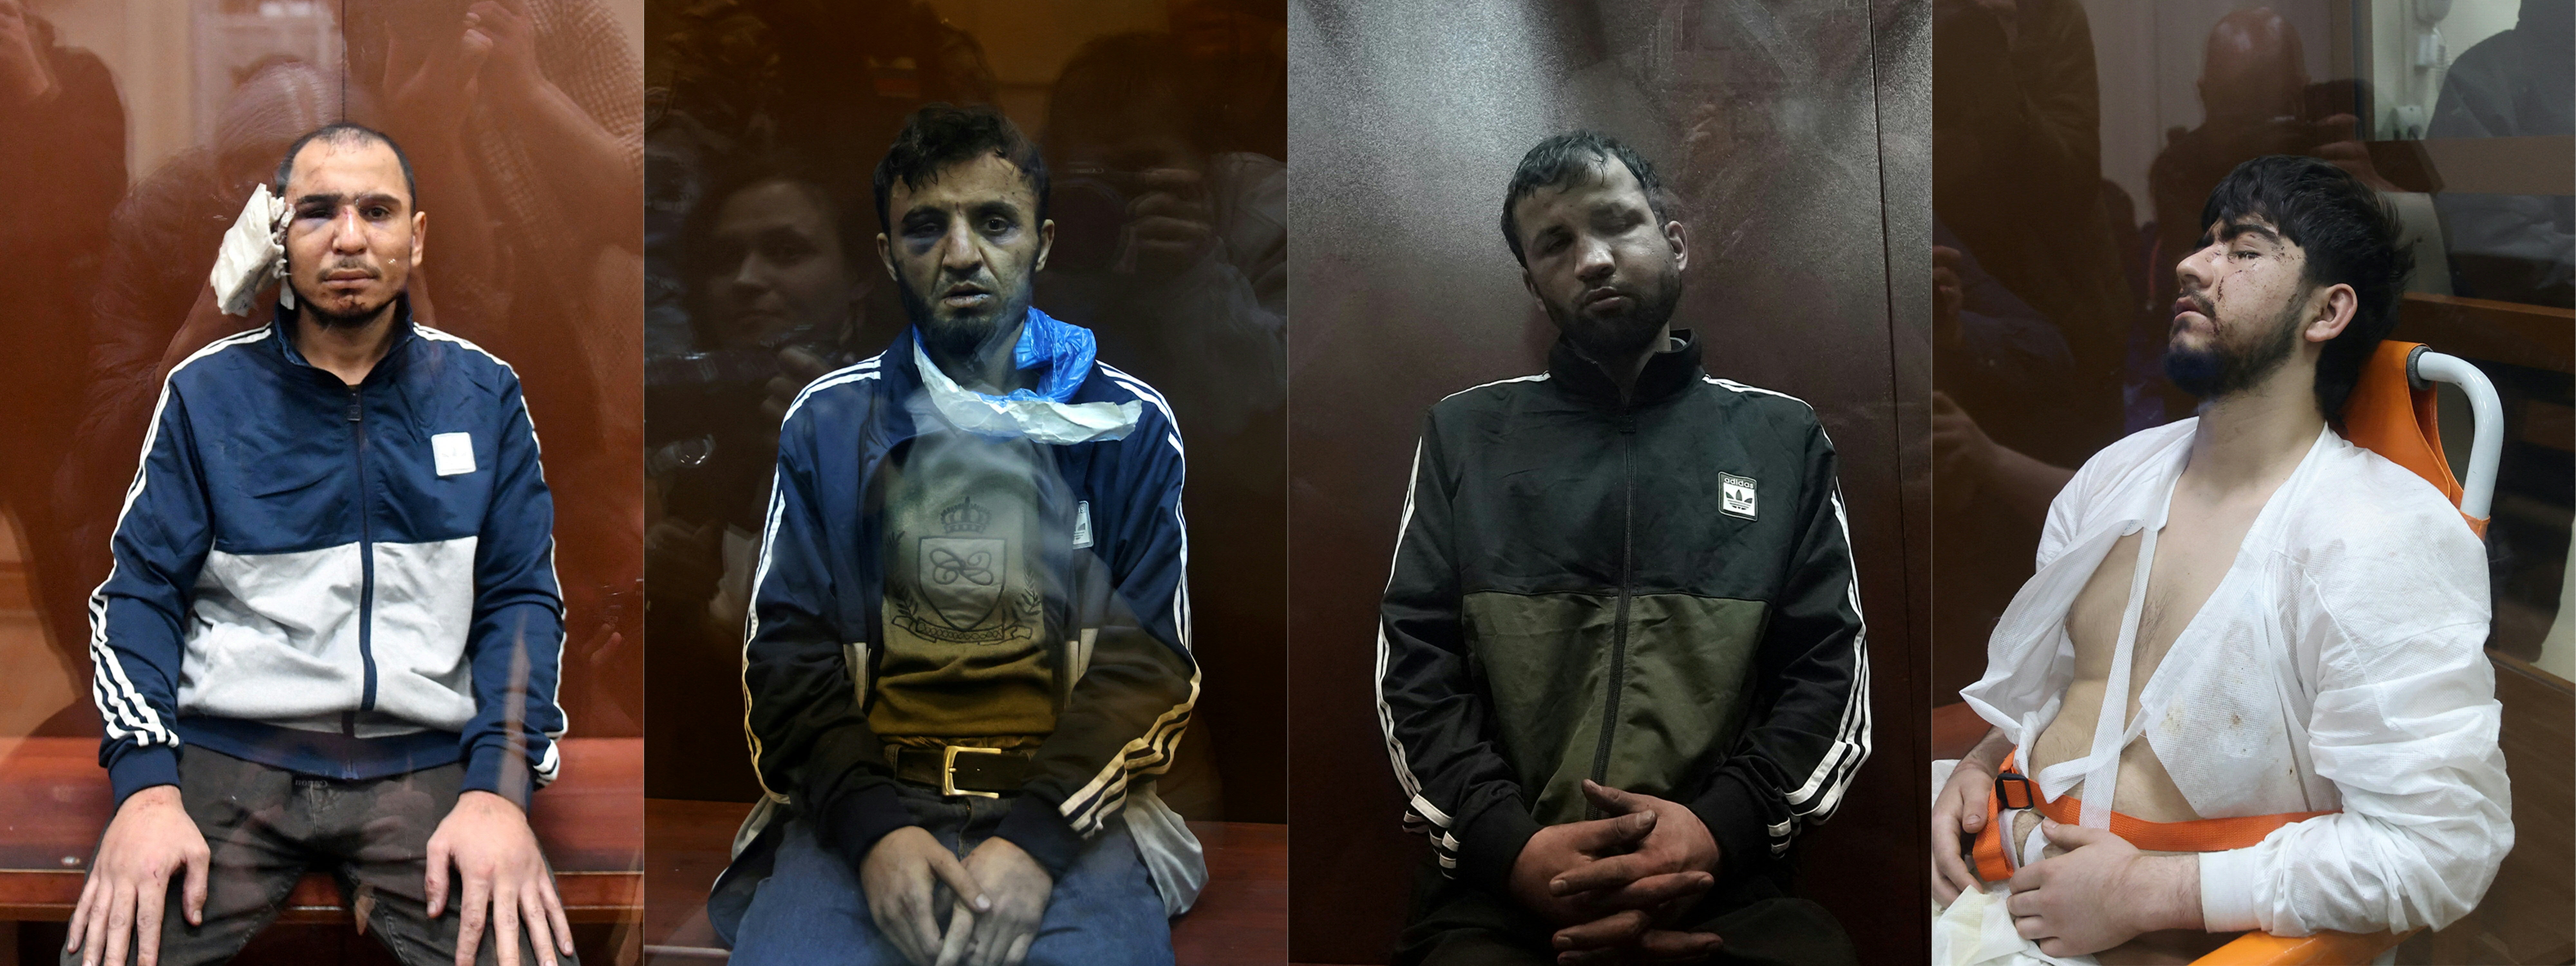 En las imágenes publicadas el 24 de marzo de 2024, se observa de izquierda a derecha a Saidakrami Murodali Rachabalizoda, Dalerdzhon Mirzoyev, Shamsidin Fariduni y Muhammadsobir Faizov, sospechosos de participar en el ataque más mortífero en Europa reivindicado por el grupo yihadista ISIS en décadas, en el que fallecieron 137 personas.